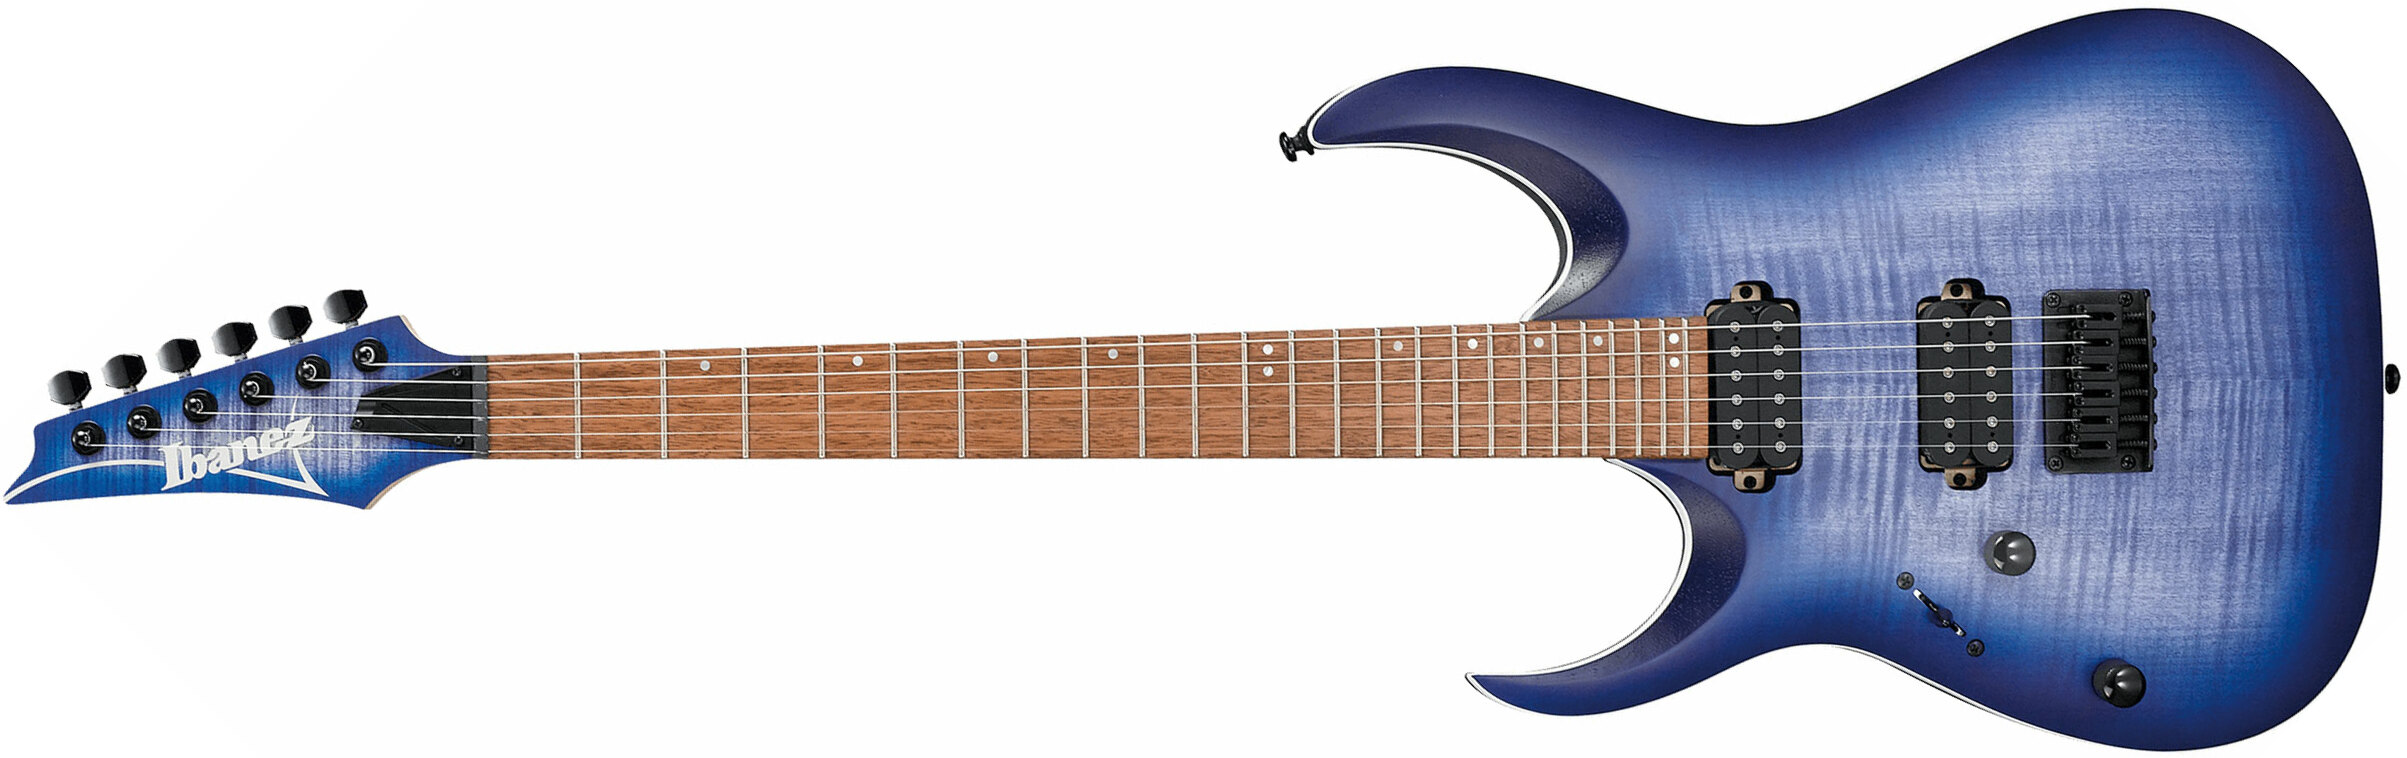 Ibanez Rga42fml Blf Gaucher Standard Hh Ht Rw - Blue Lagoon Burst Flat - Elektrische gitaar in Str-vorm - Main picture